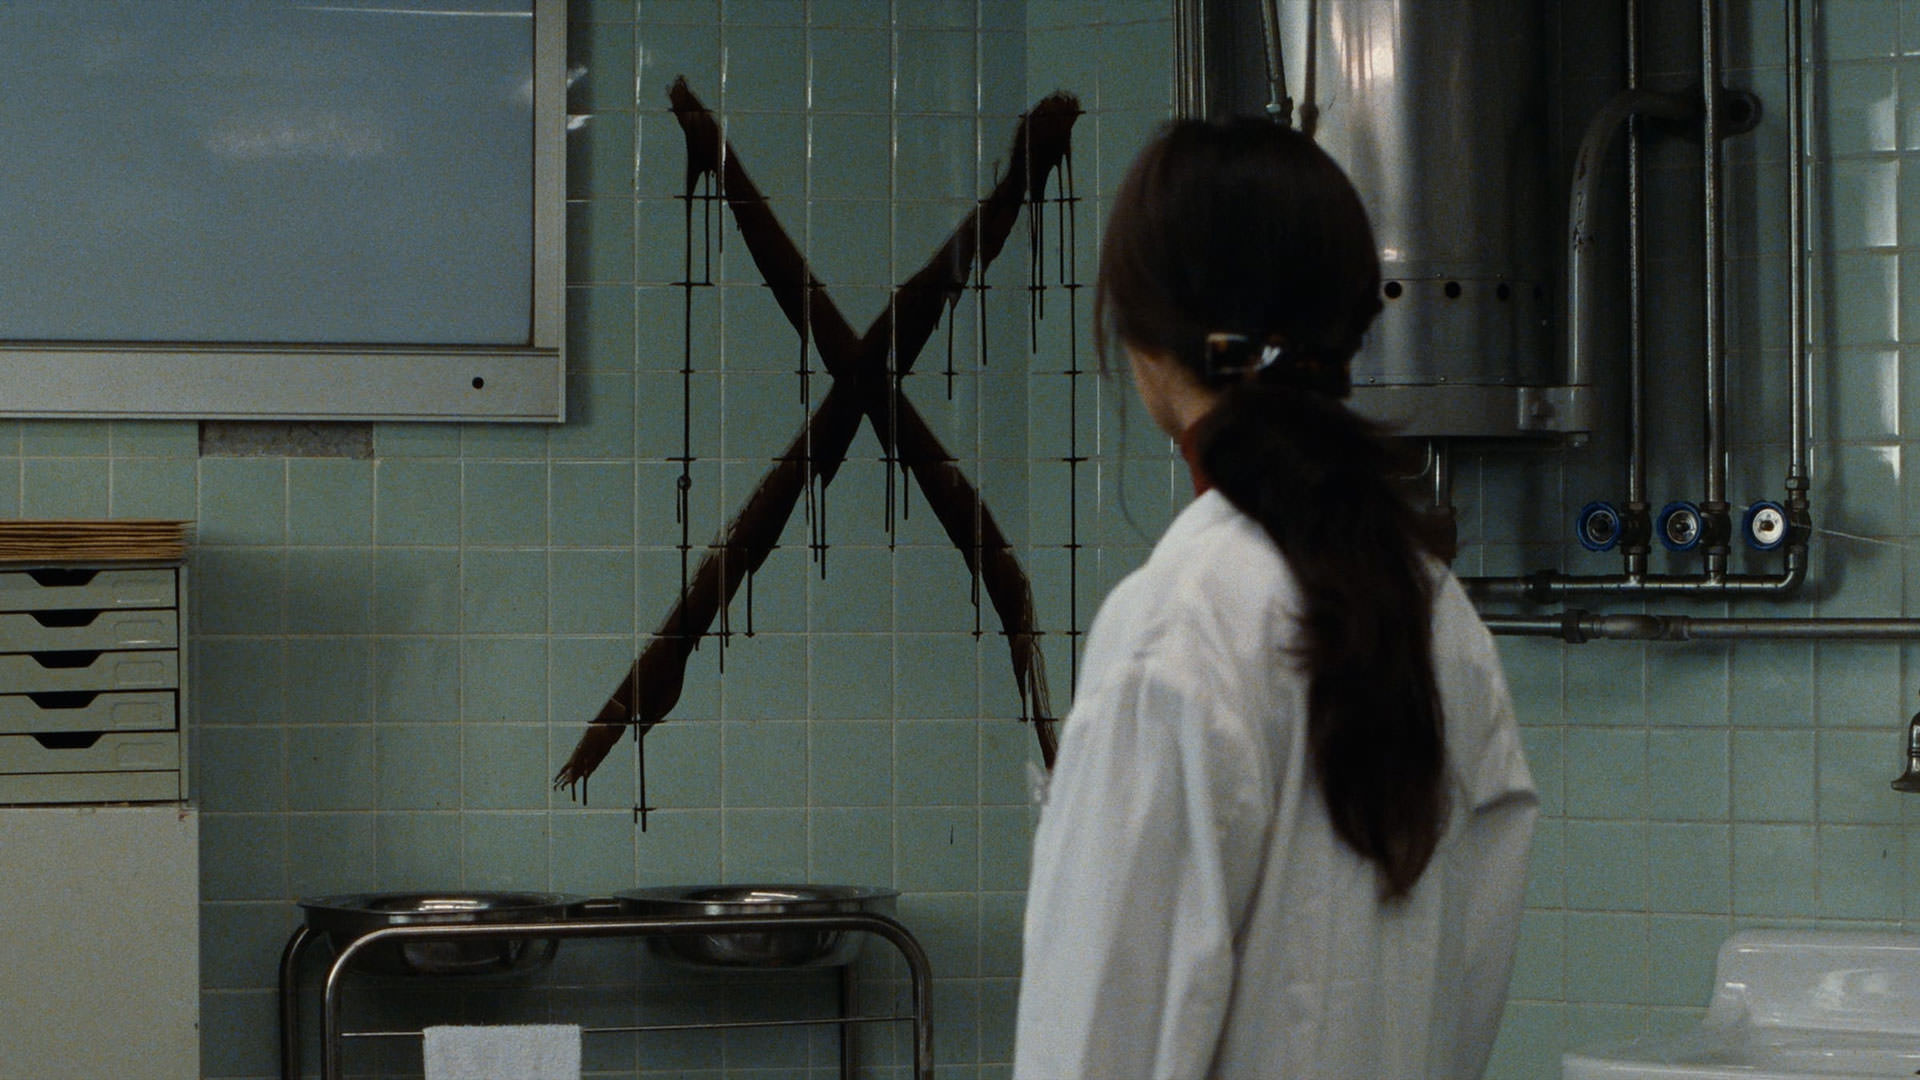 زنی با روپوش سفید پزشک به نماد ضربدر سیاه‌رنگی که روی دیوار است نگاه می‌کند در نمایی از فیلم درمان به کارگردانی کیوشی کوروساوا